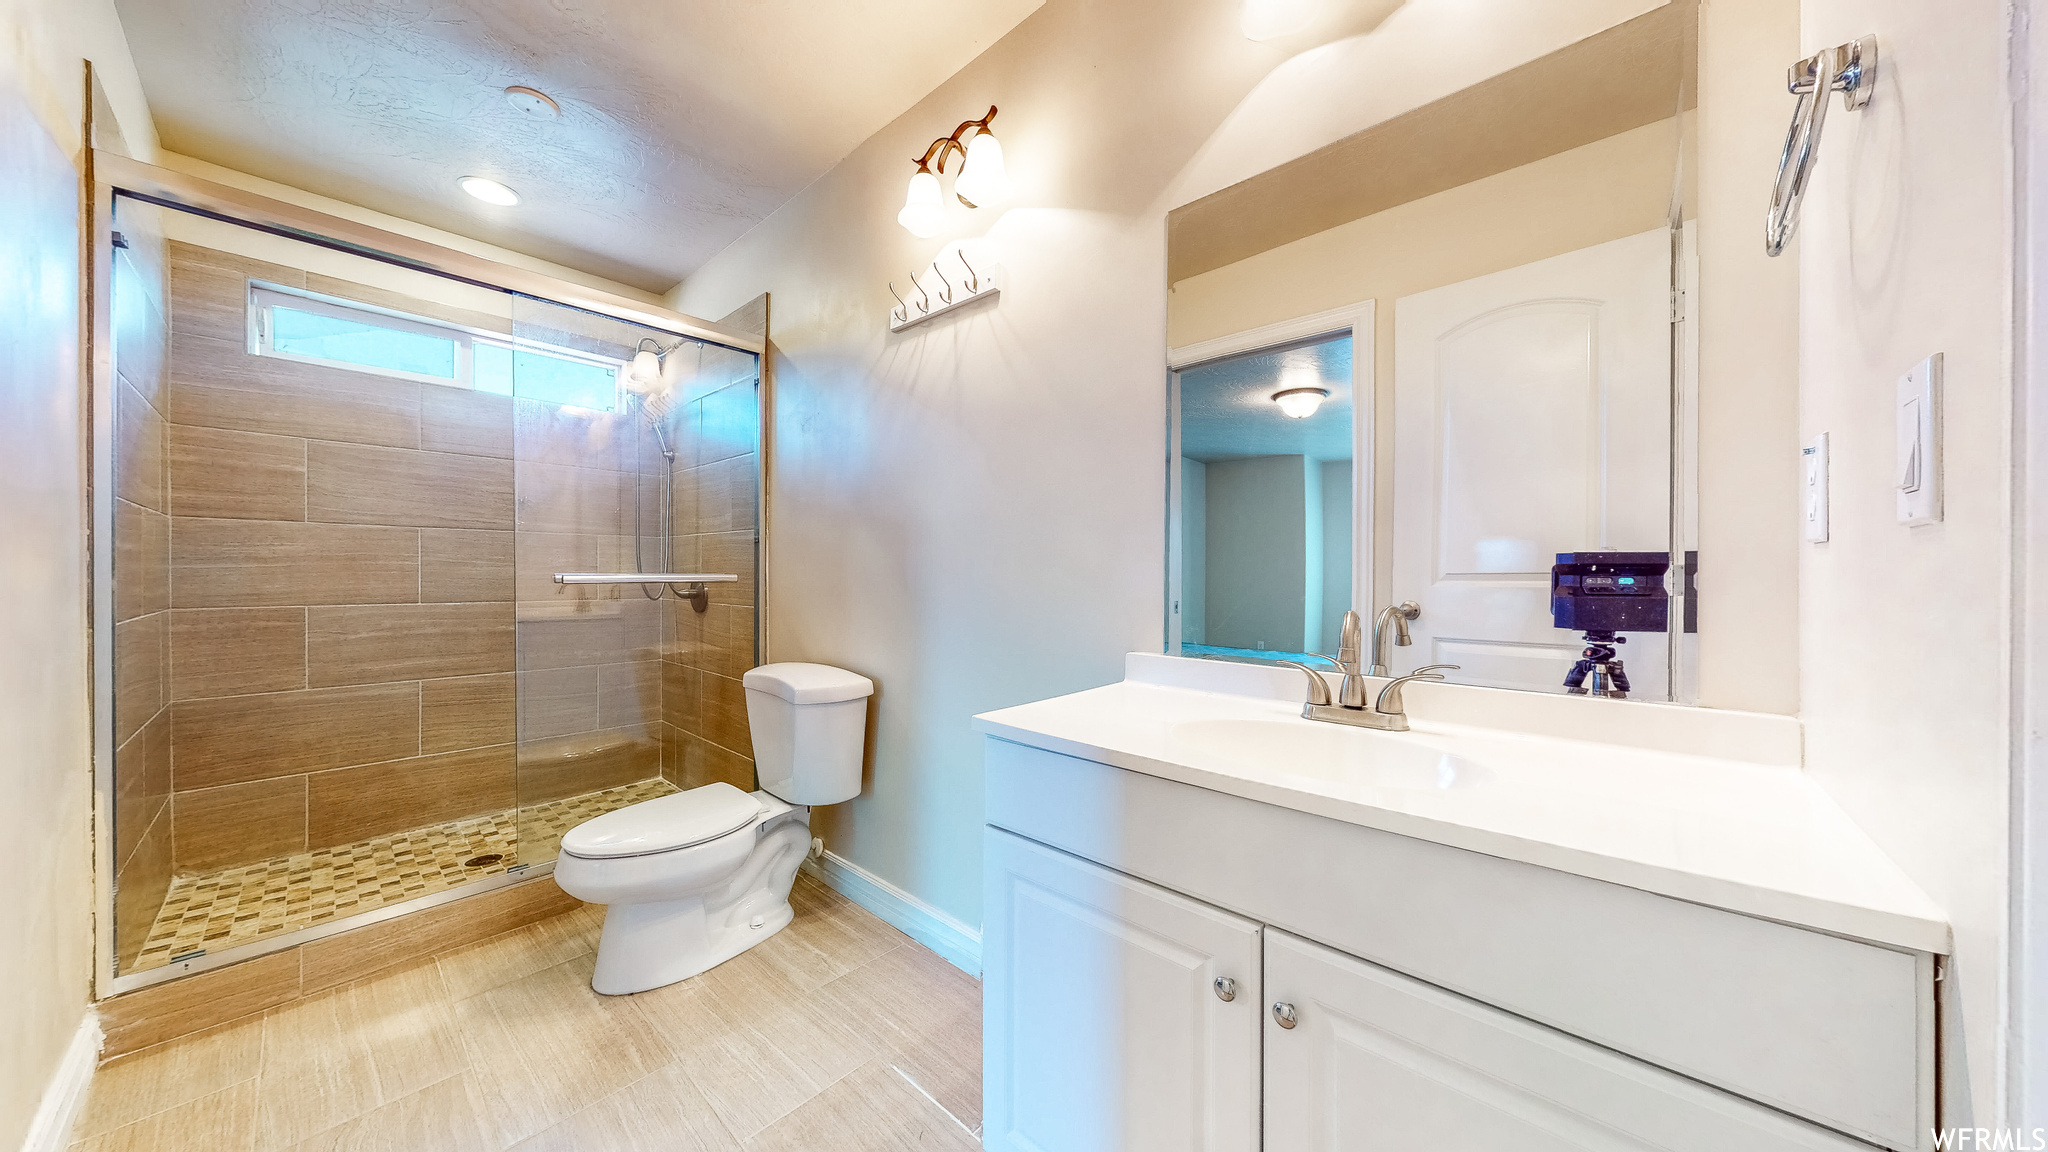 Bathroom featuring tile floors, large vanity, walk in shower, and toilet